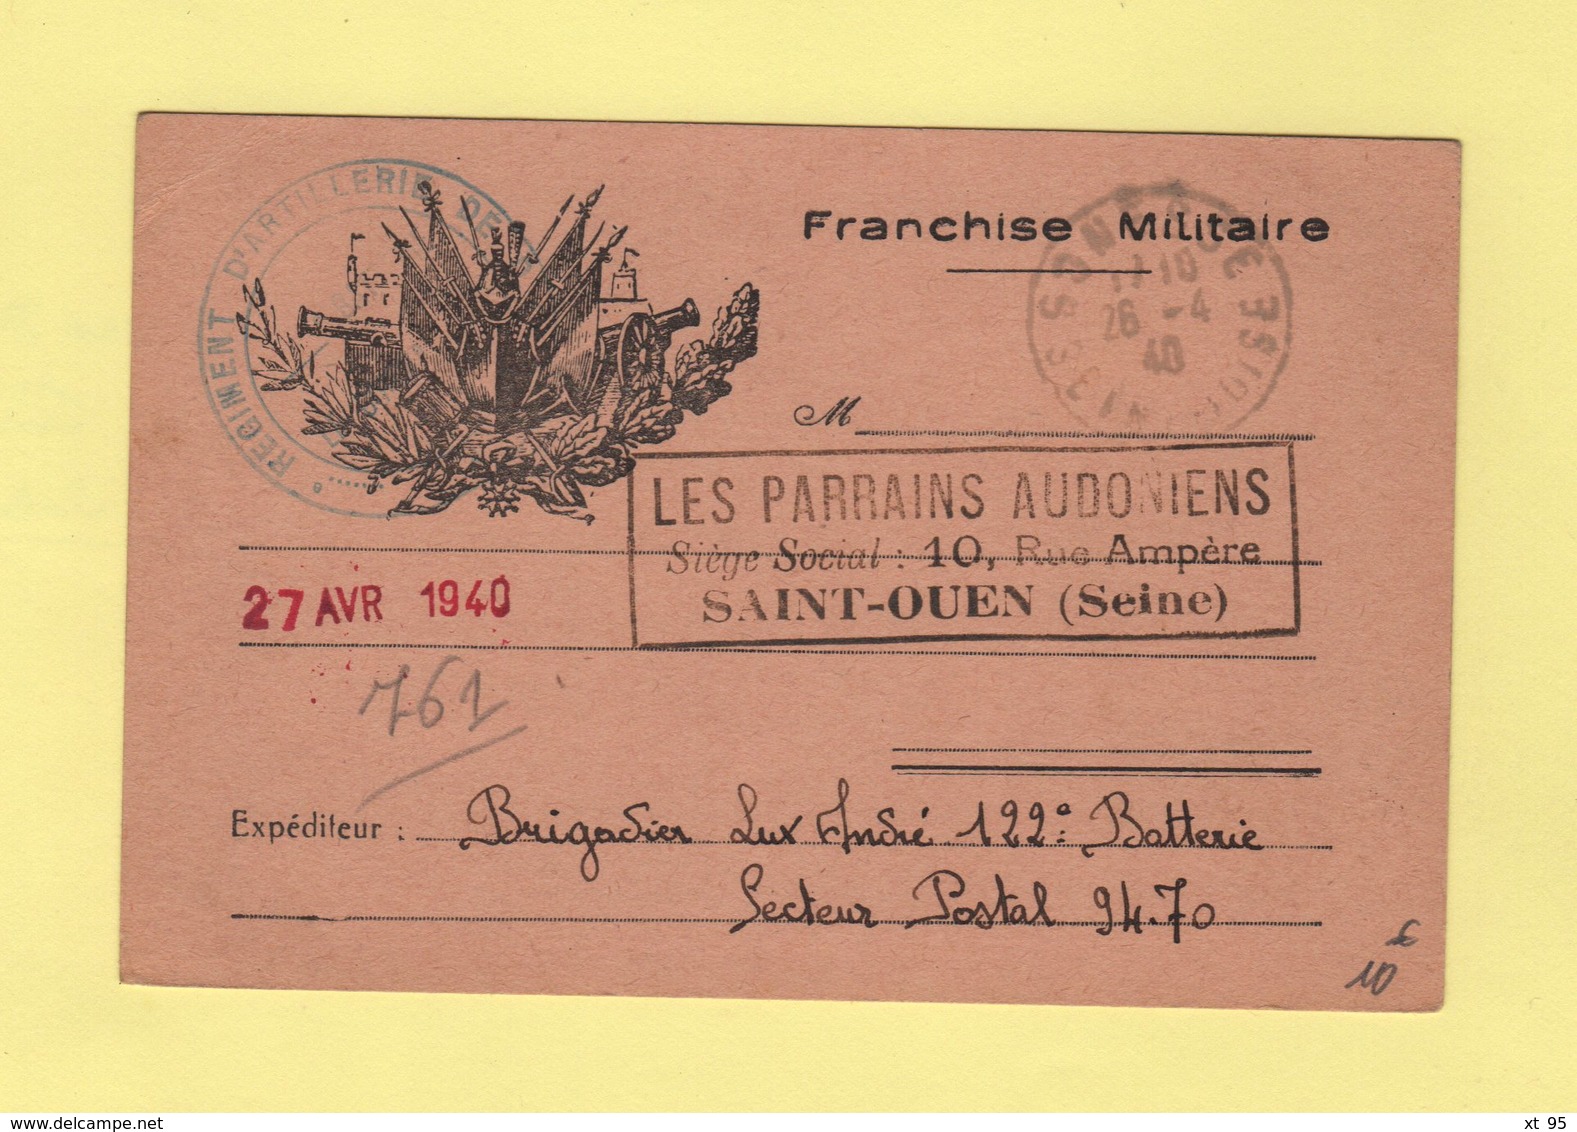 Carte De Franchise Militaire Illustree Adressee Aux Parrains Audoniens De Saint Ouen  - Gonesse Seine Et Oise 26-4-1940 - 2. Weltkrieg 1939-1945